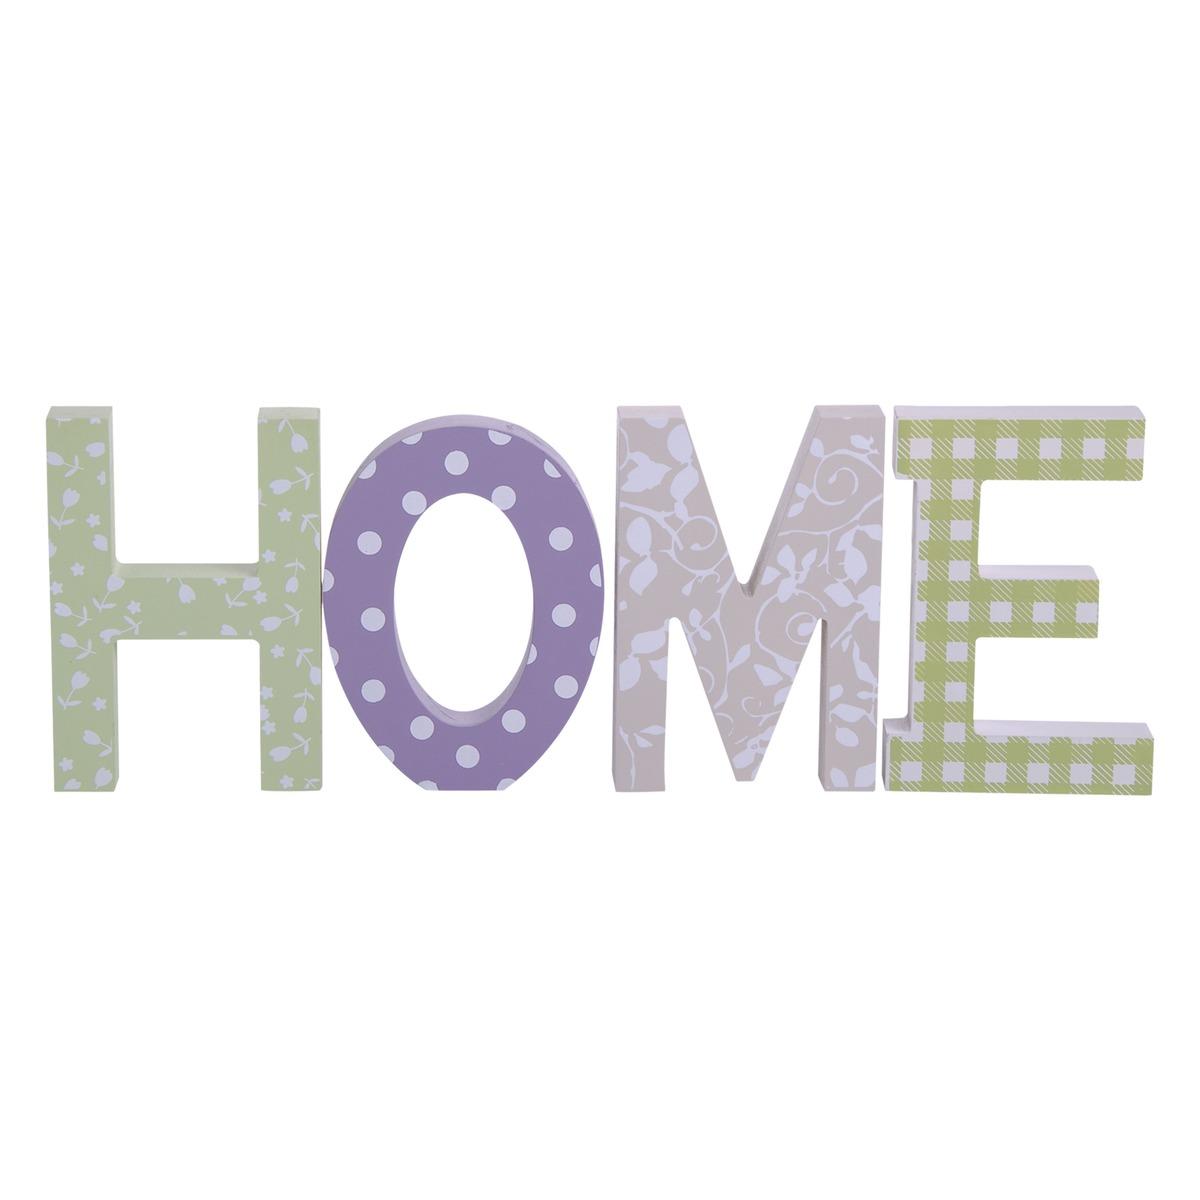 Lettres décoratives home - 45 x 12,5 x 16 cm - Violet mauve et vert